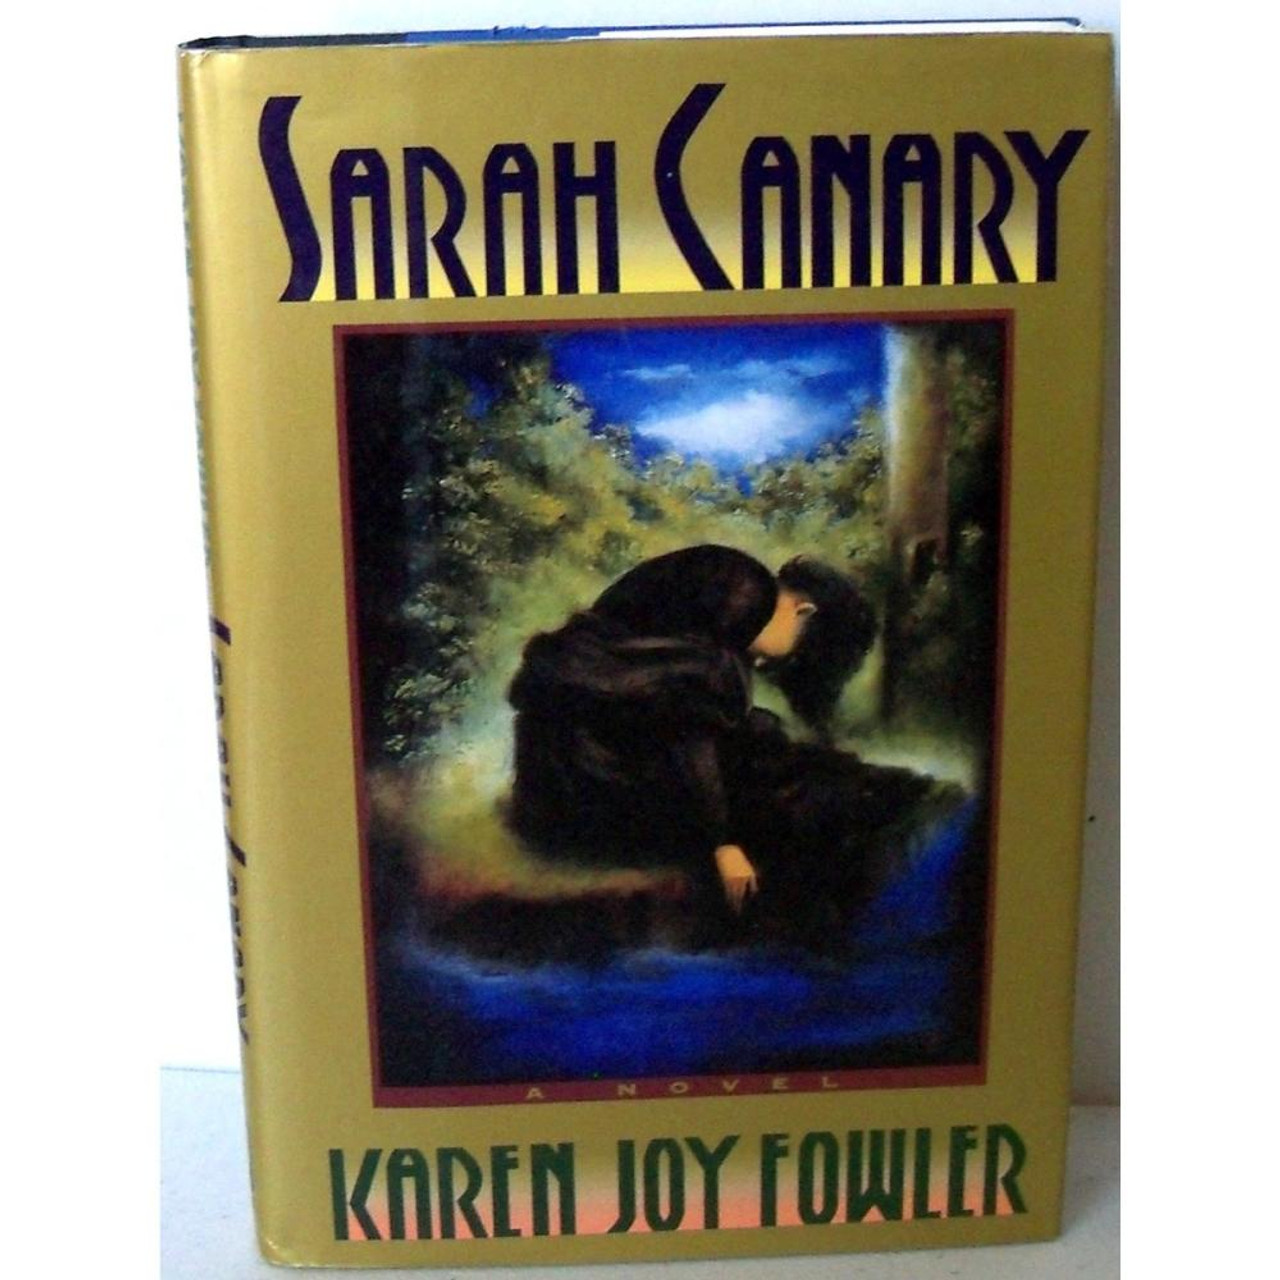 Fowler, Karen Joy - Sarah Canary - HB US 1st Edition -1991